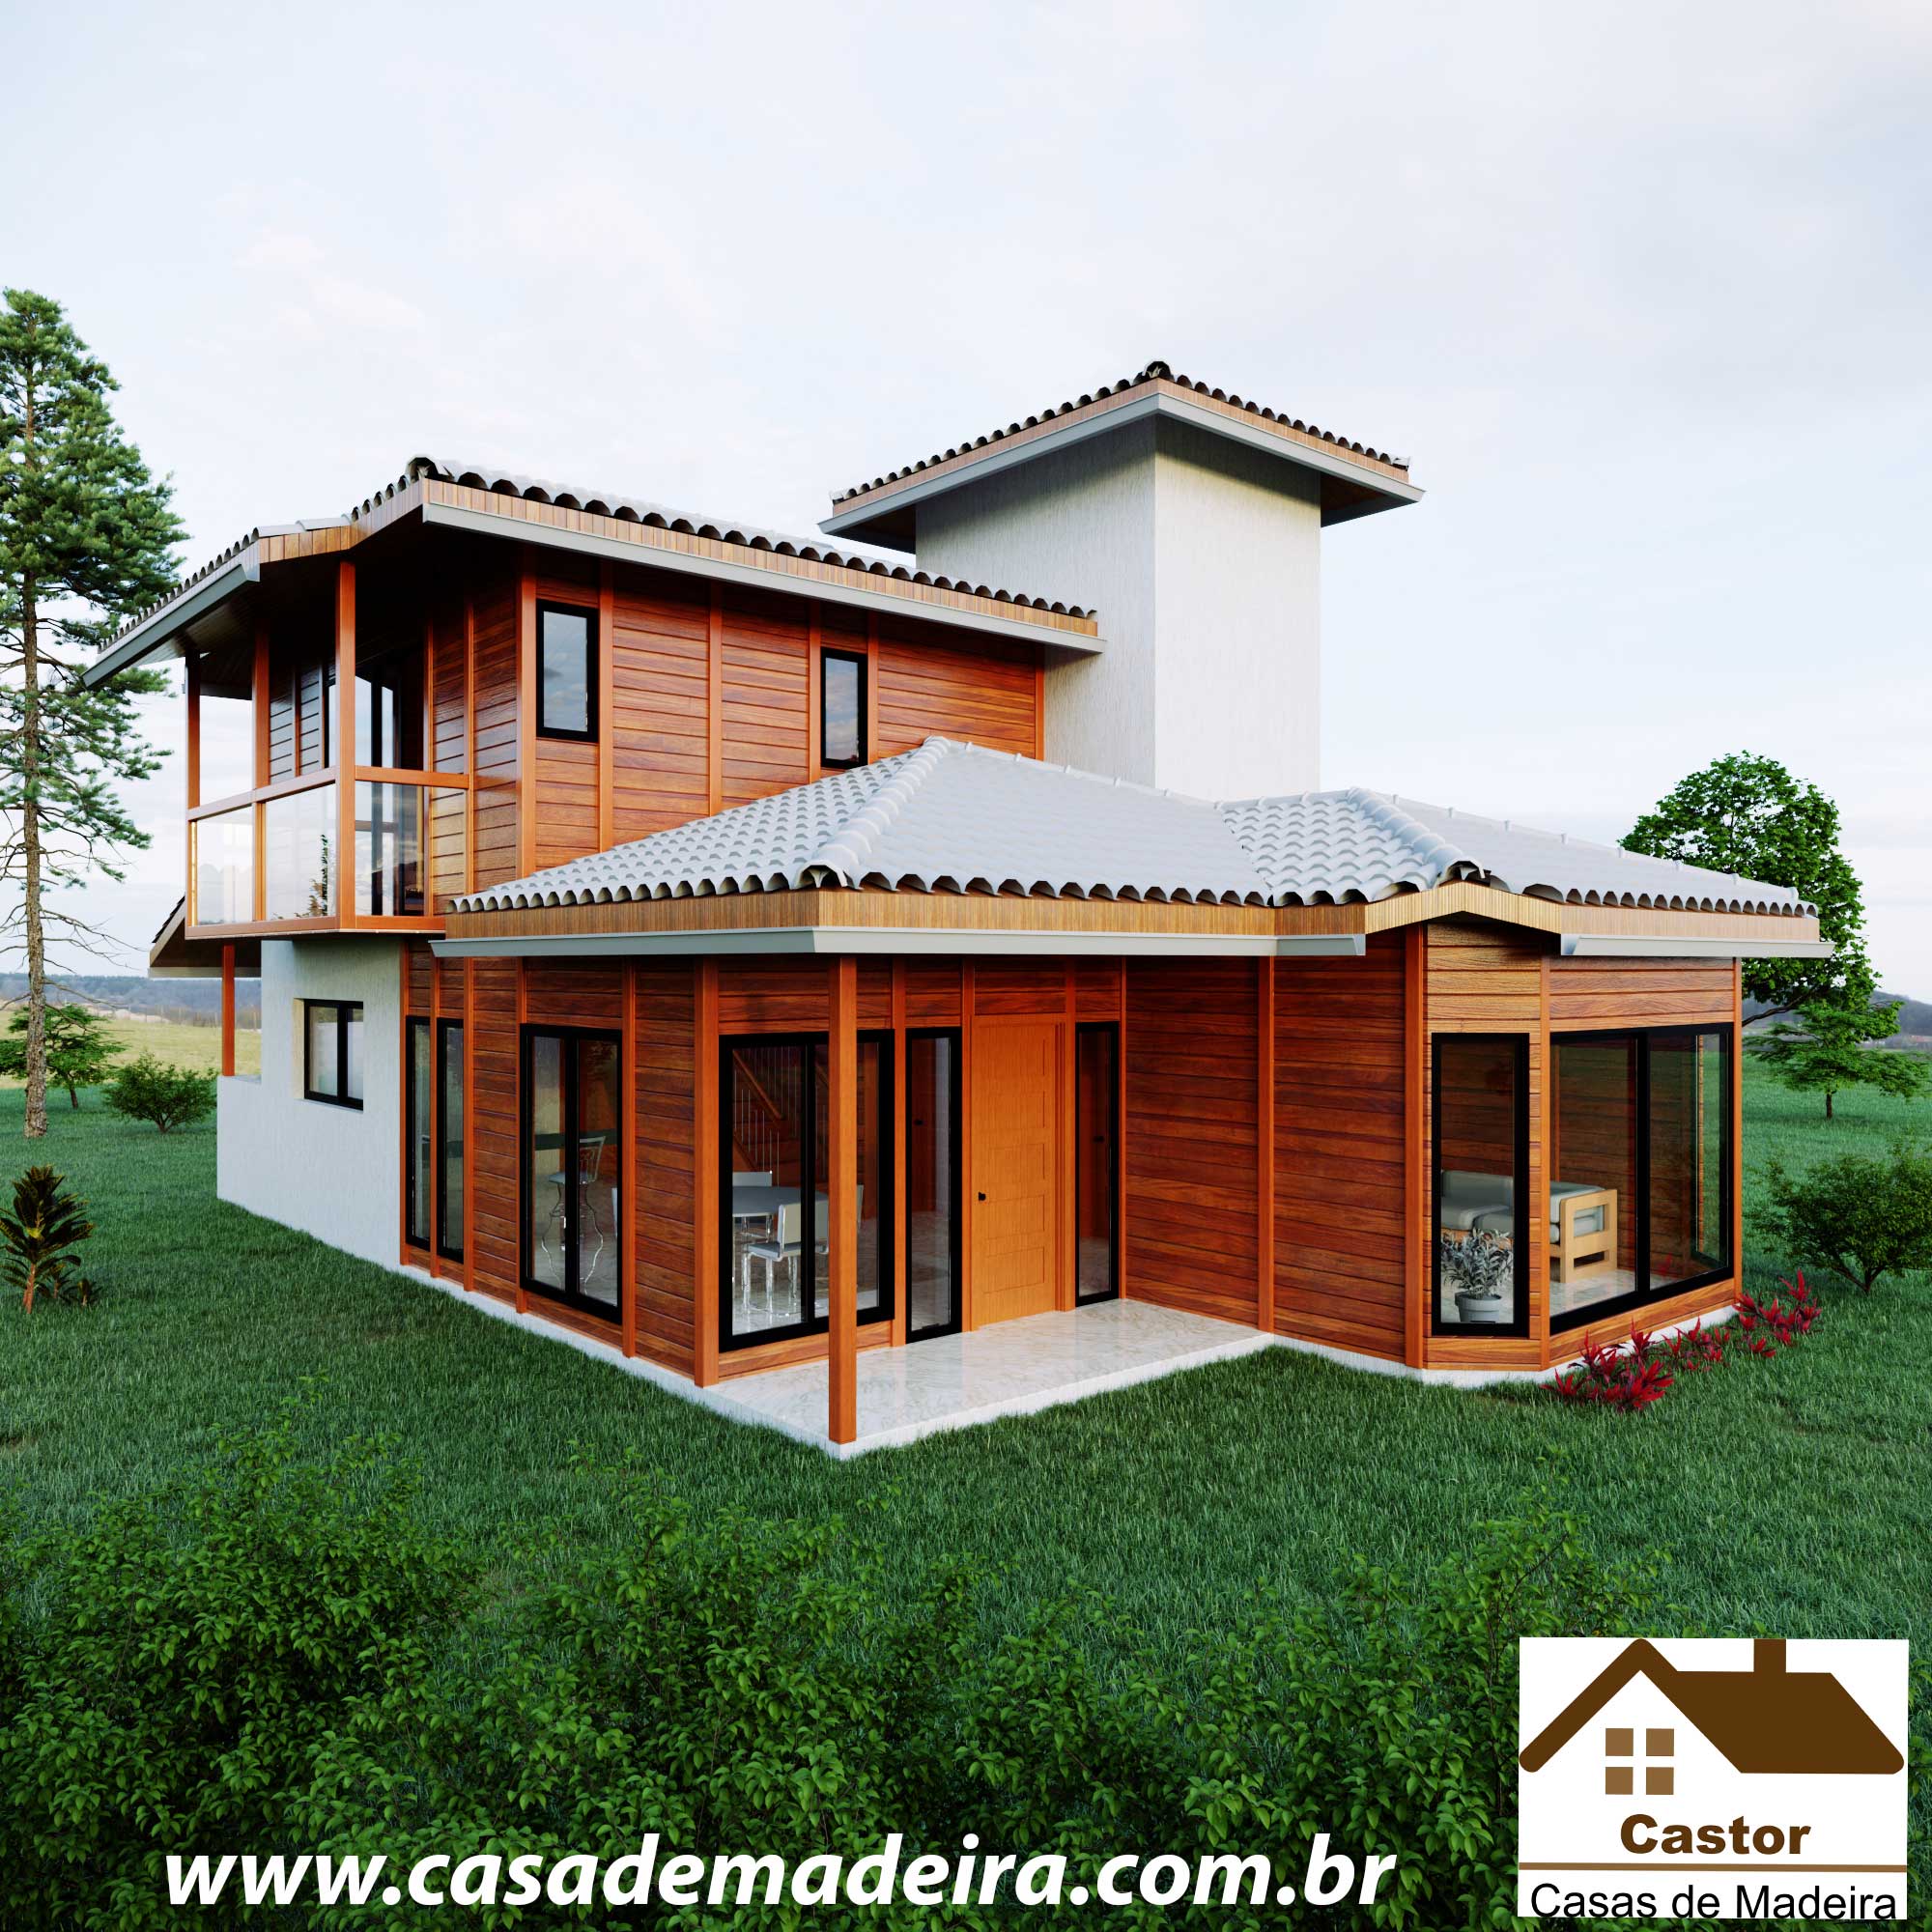 Casa de madeira modelo portugal